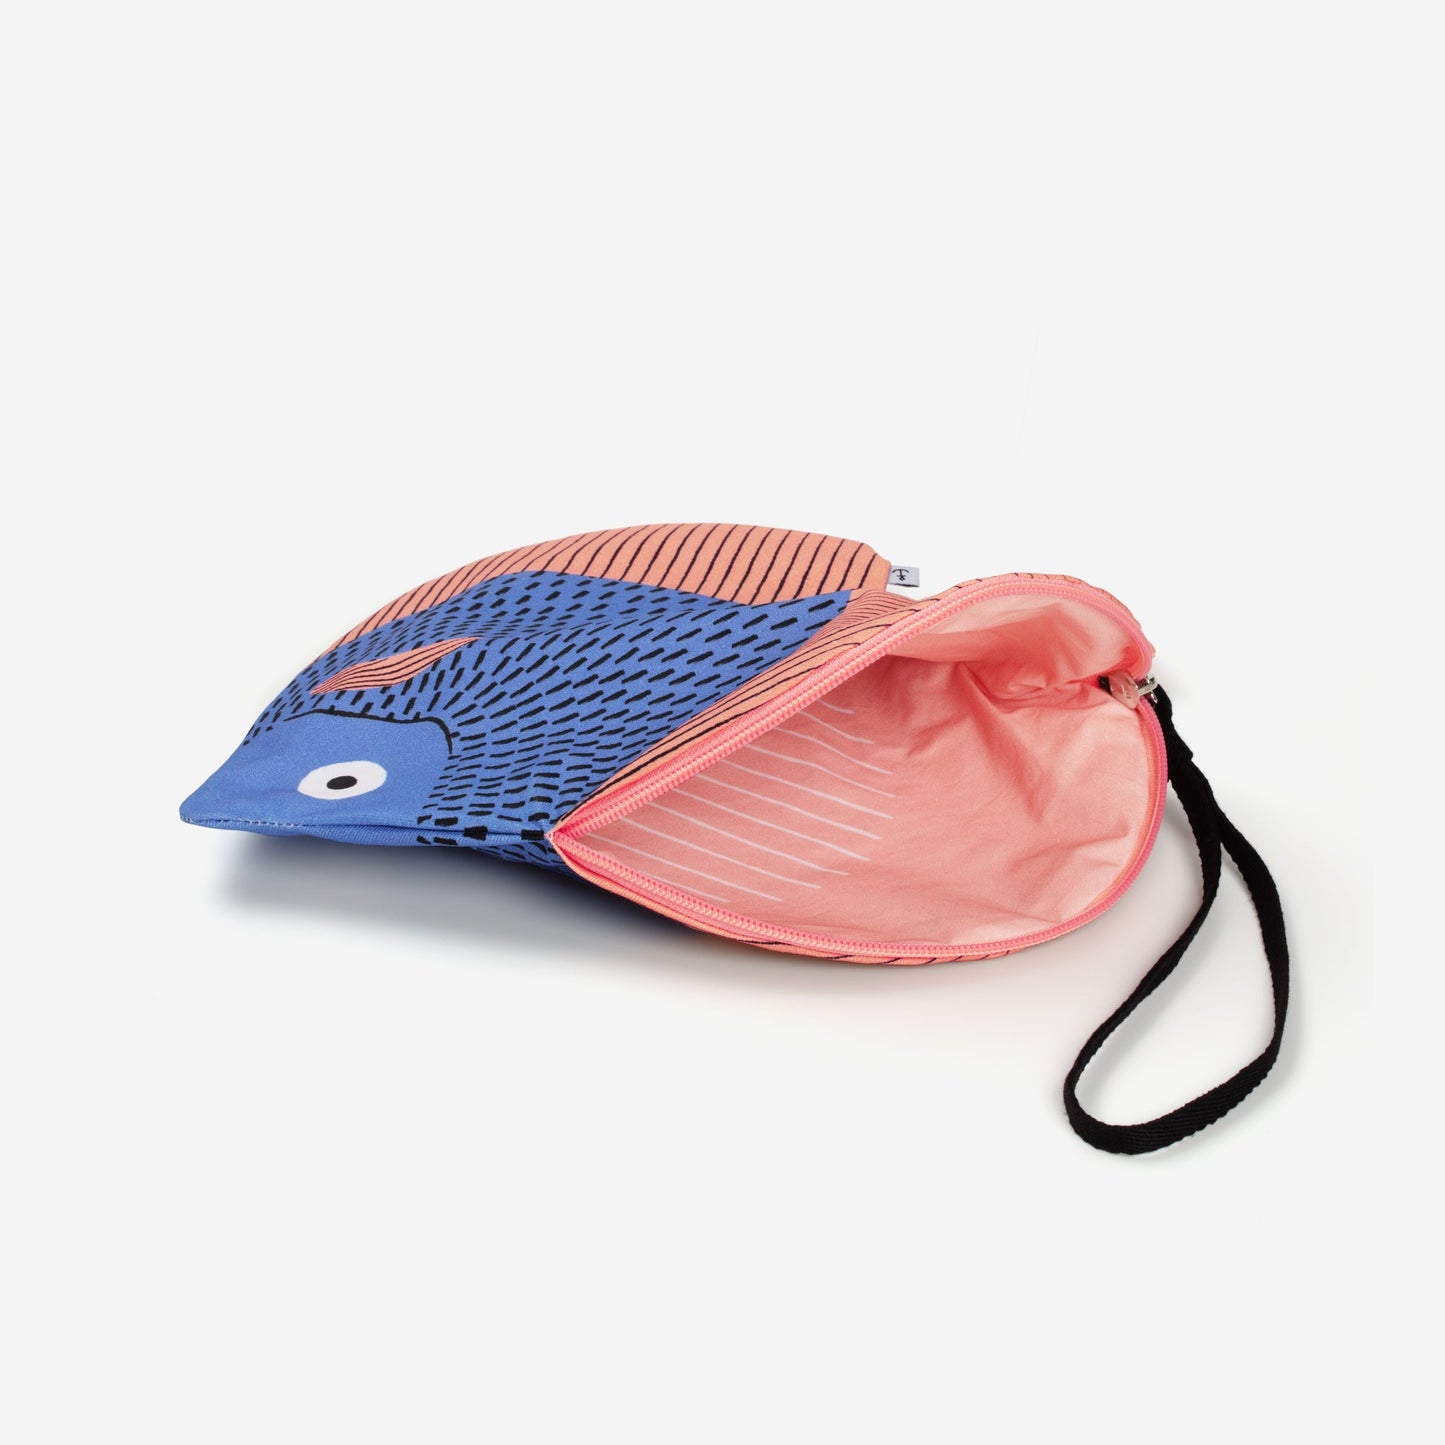 Blue Discus handbag